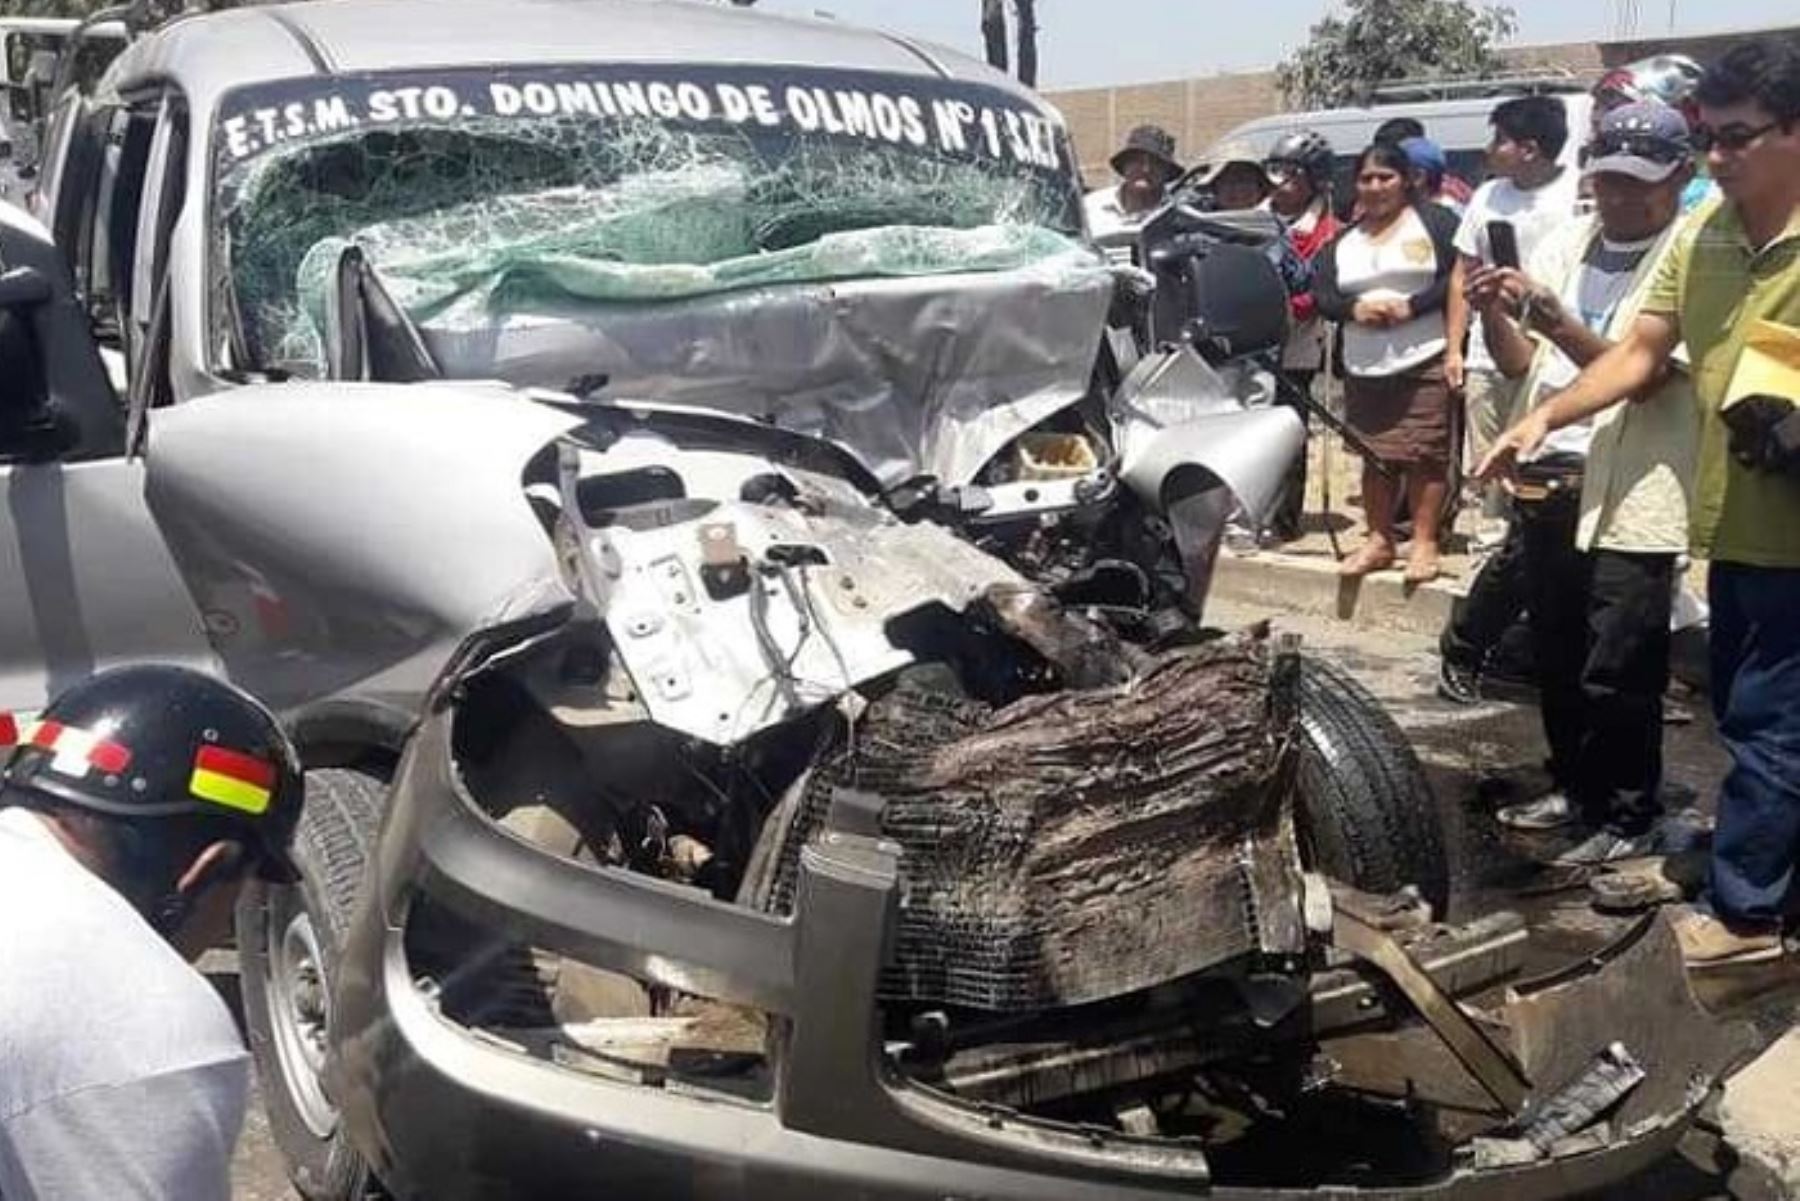 Fuerte colisión entre una minivan de placa M20-952, conducido por Lázaro Rimarachin Herrera (47), contra un camión tráiler de placa M1C-976, causó la muerte en el acto del chofer del primer vehículo.